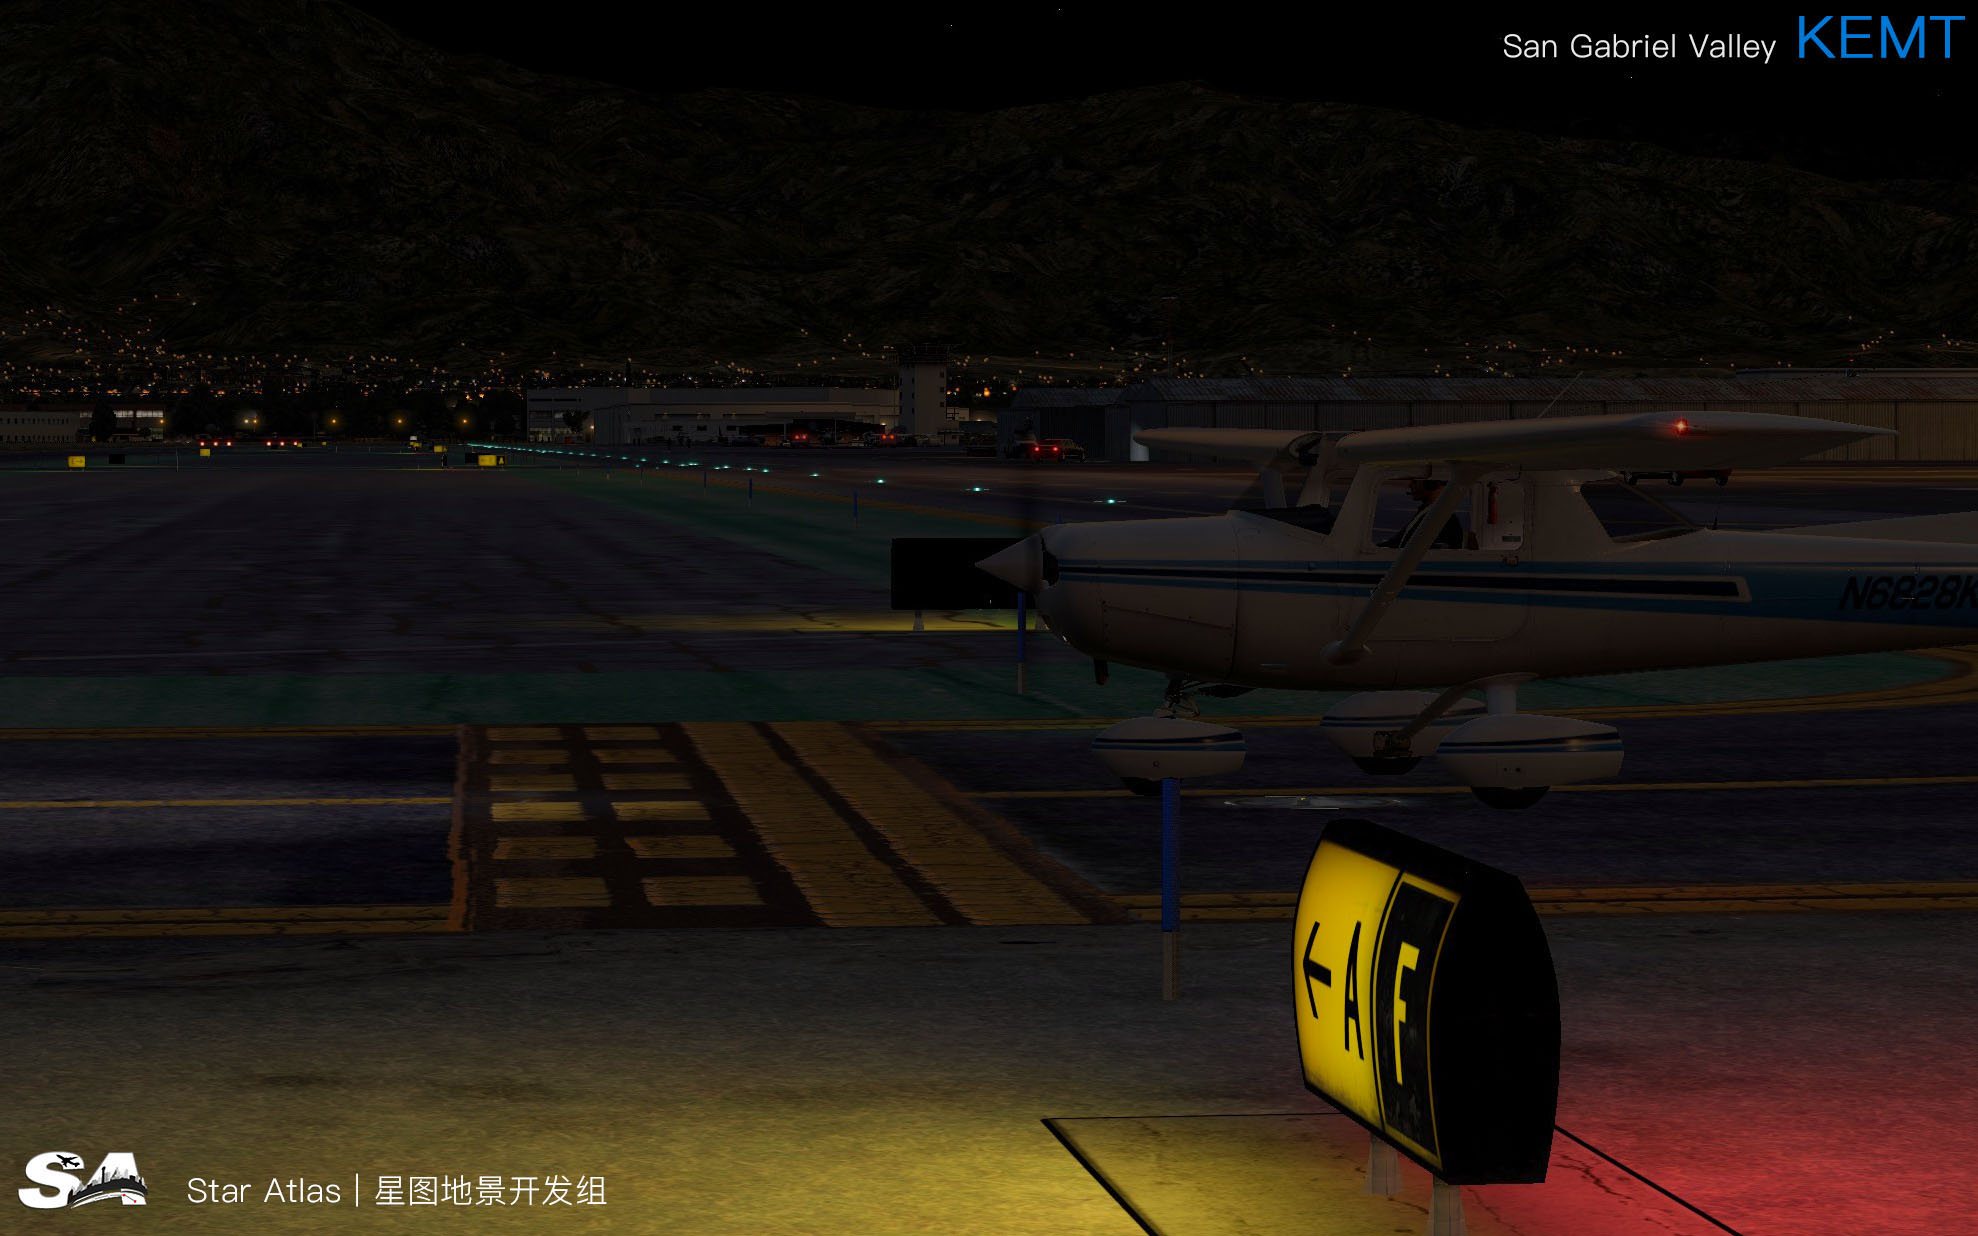 【X-Plane】KEMT-圣盖博谷机场 HD 1.0-957 